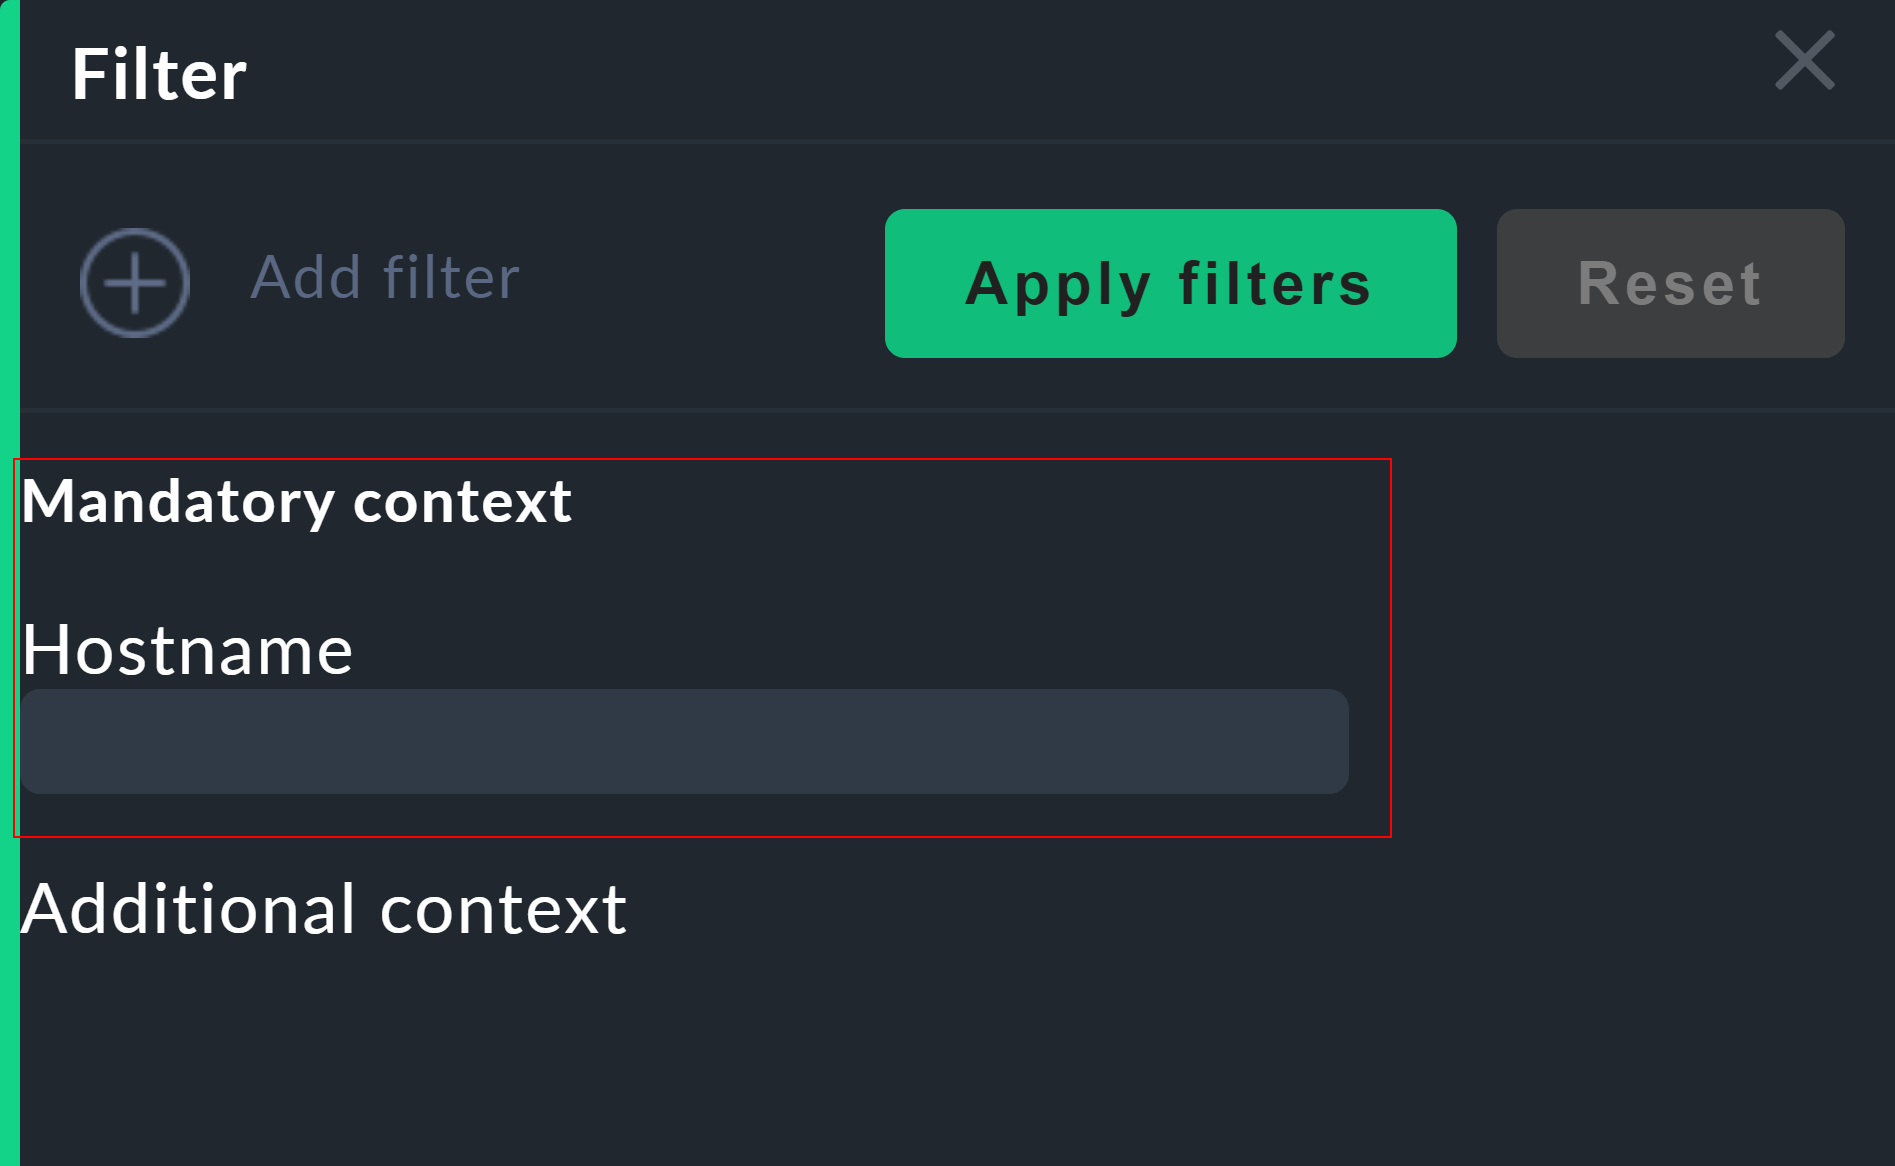 Anzeige der Funktion zum Anwenden eines Filters.